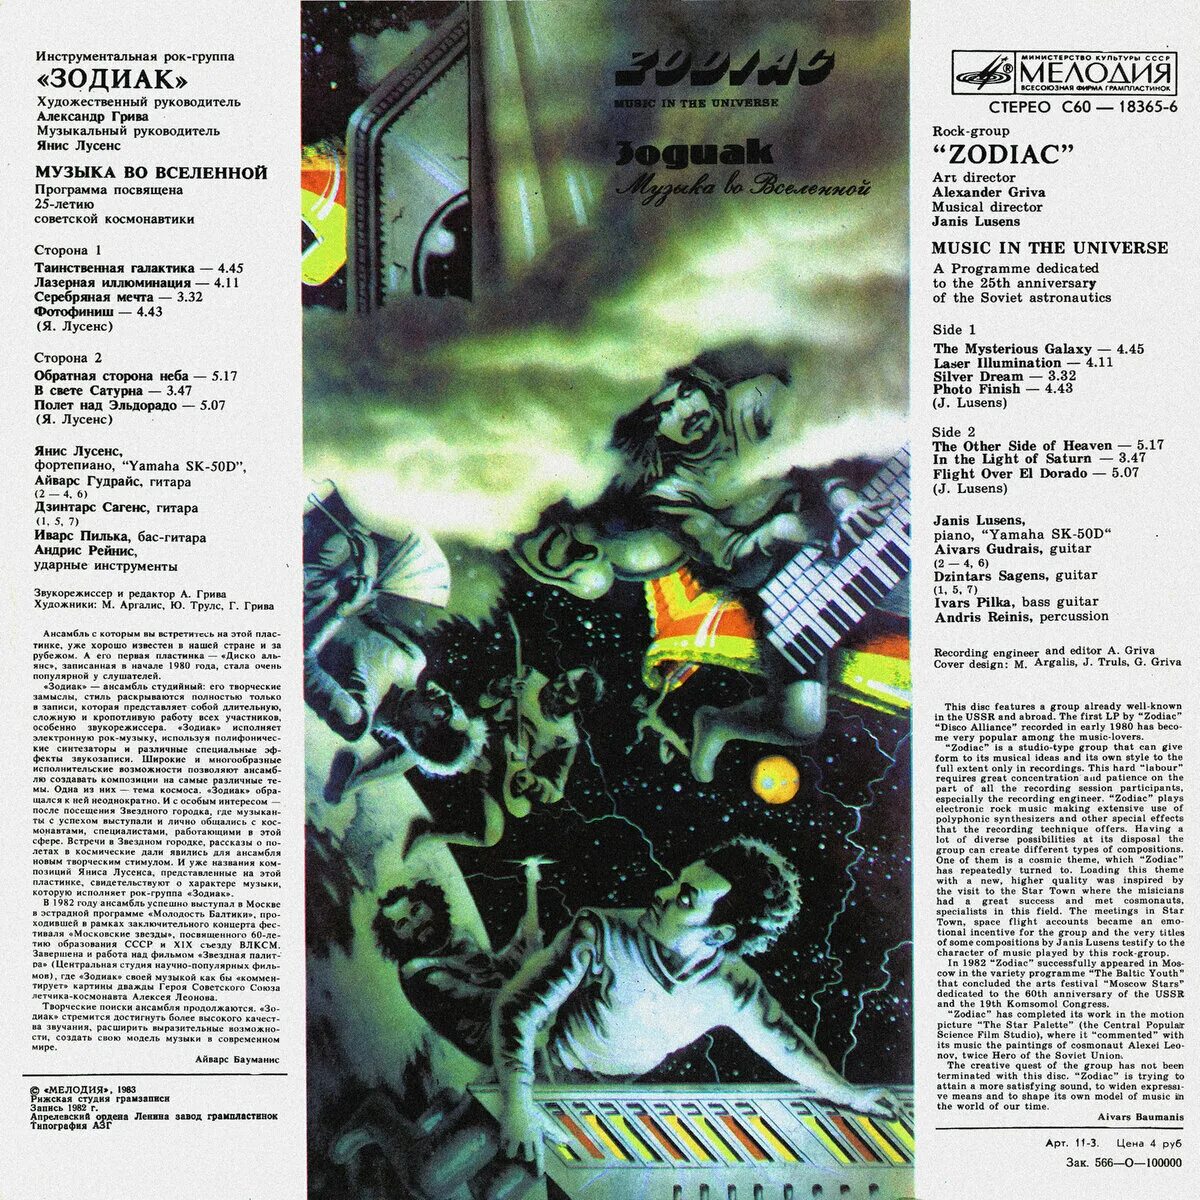 Группа Зодиак 1982. Зодиак мелодия. Зодиак музыка во Вселенной 1982. Zodiac - музыка во Вселенной (1983).